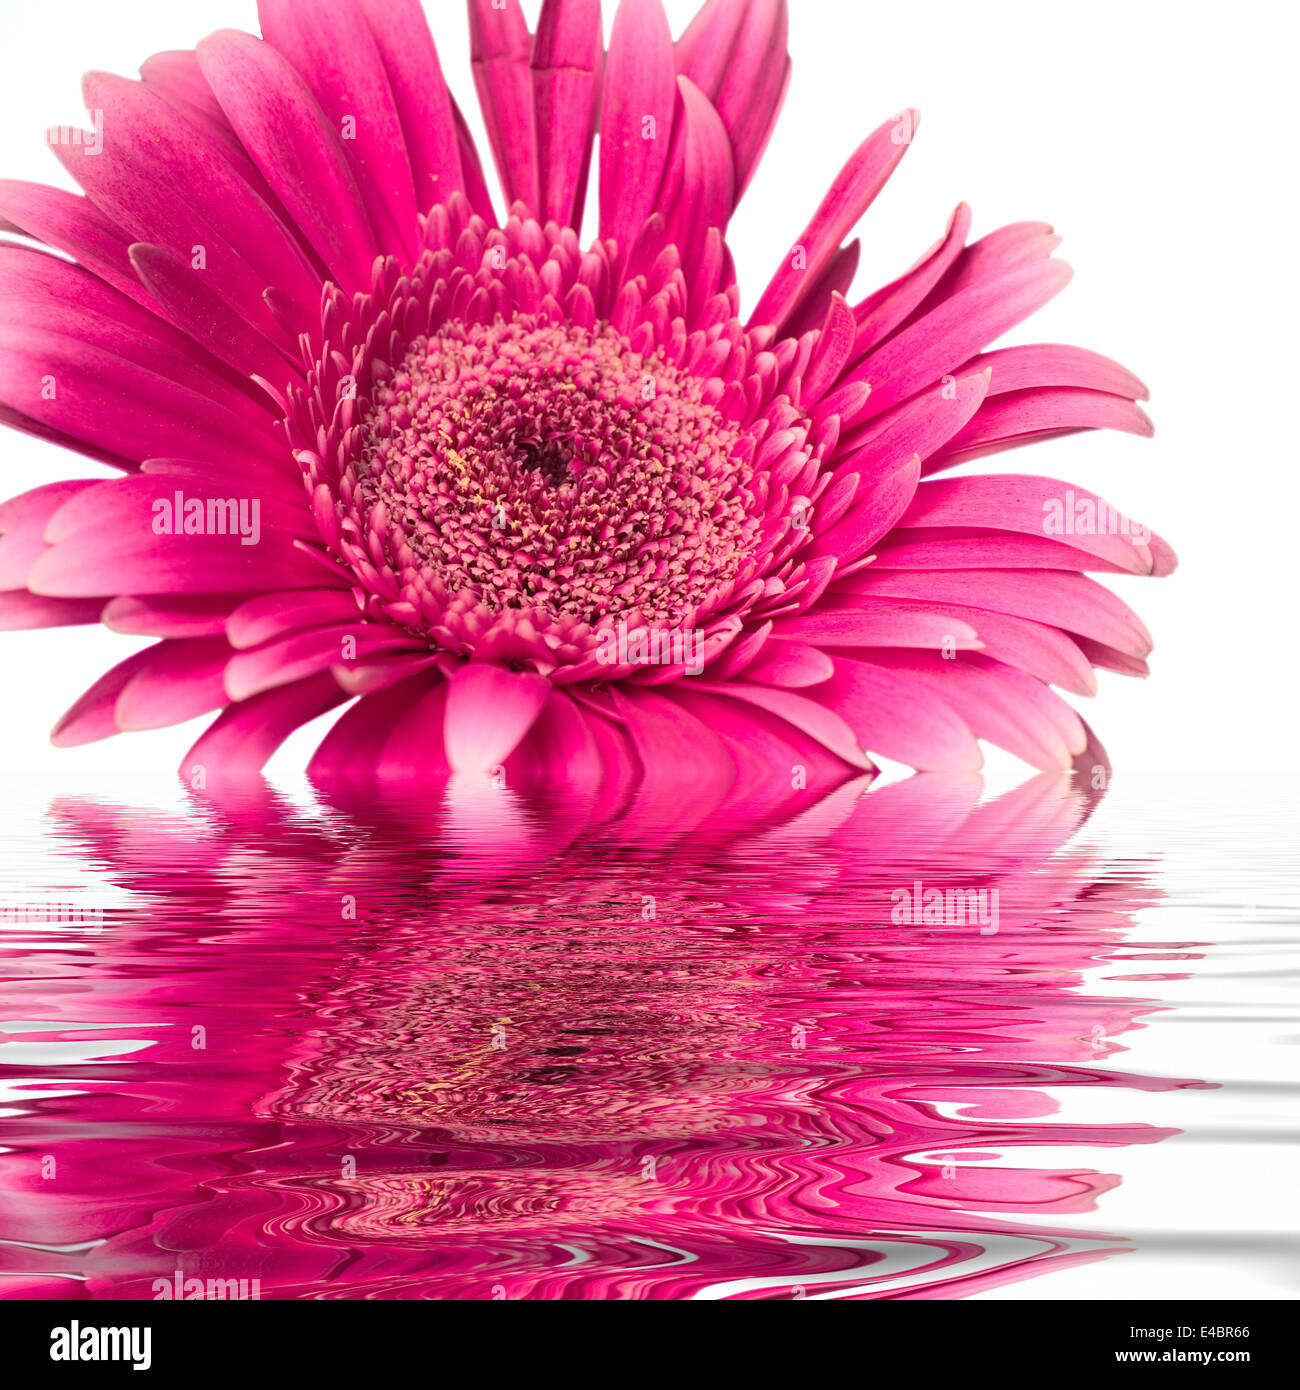 Un fiore rosa è per metà immerso in acqua Foto Stock